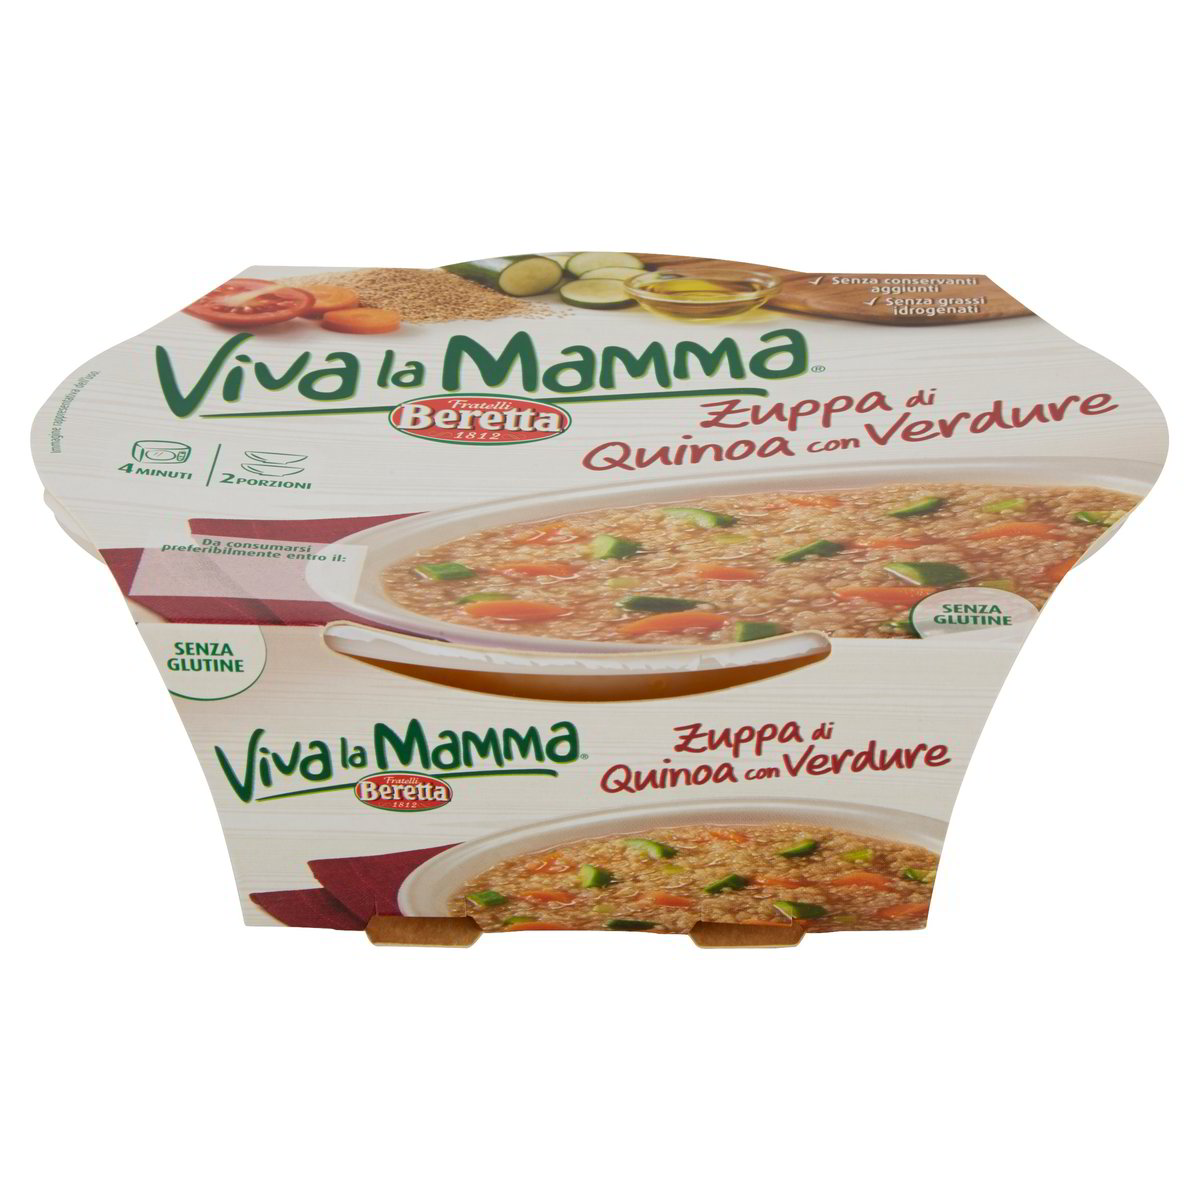 VIVA LA MAMMA BERETTA Zuppa di Quinoa con verdure 500 GR 2 porzioni. - Basko